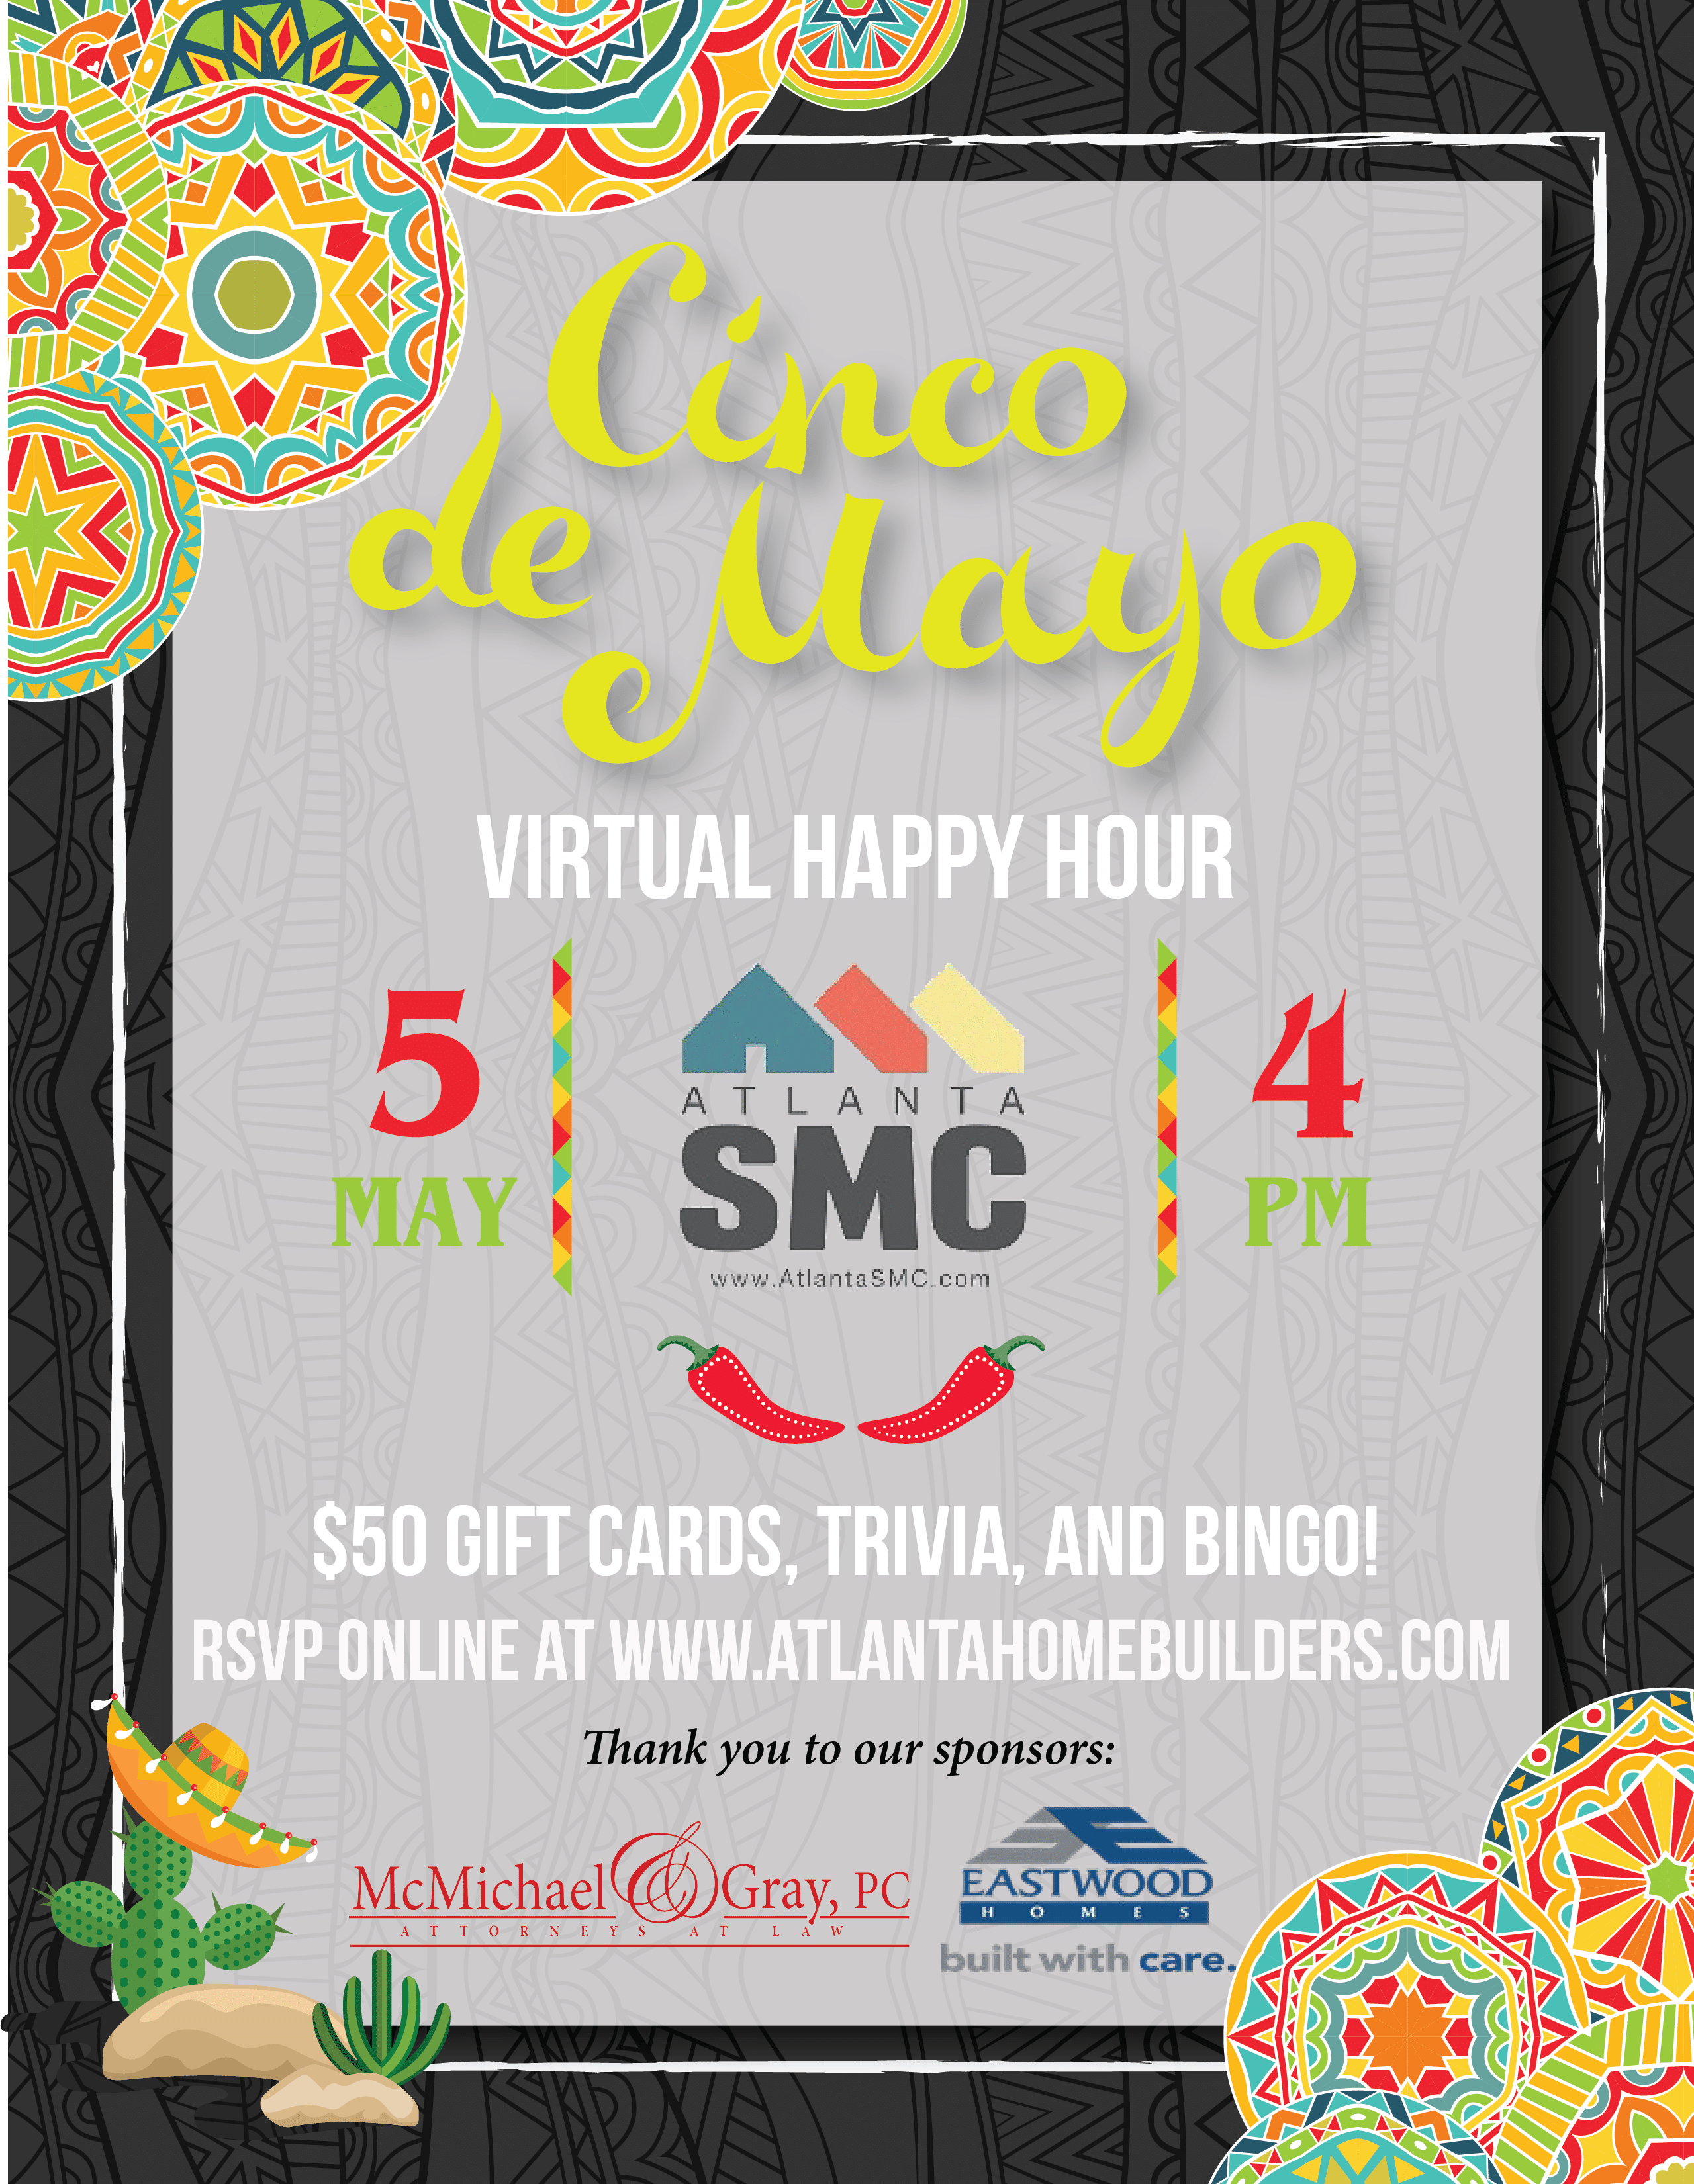 Join Atlanta SMC for Cinco de Mayo Virtual Happy Hour